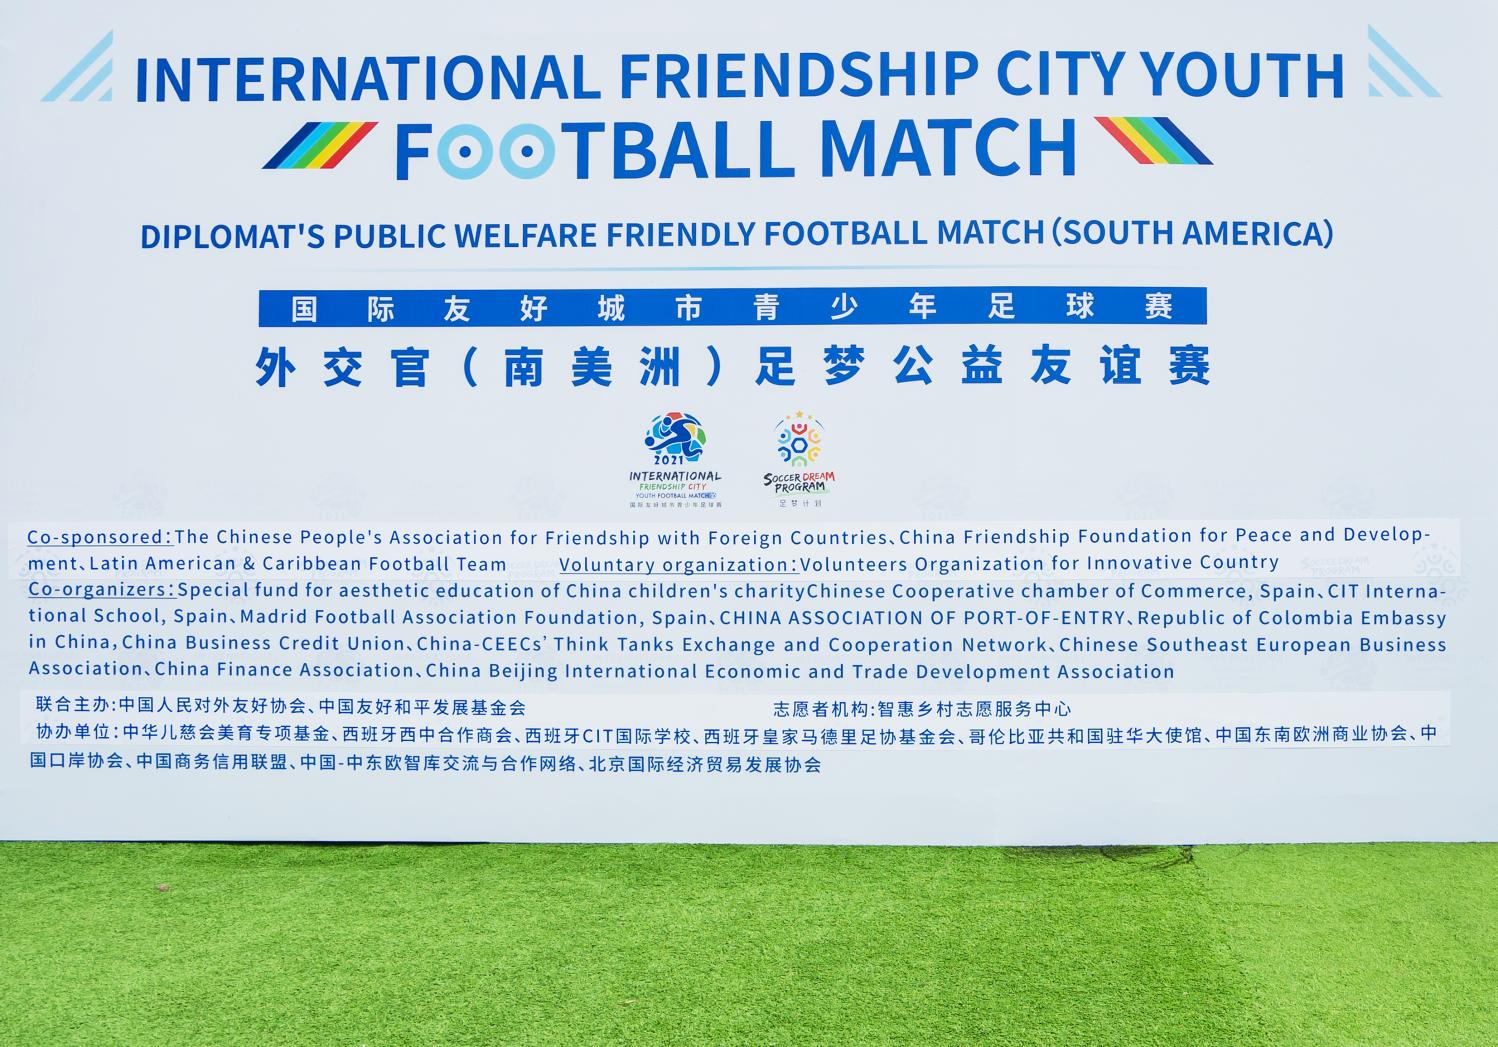 国际友好城市青少年足球赛外交官（南美洲） 足梦公益友谊赛隆重举办